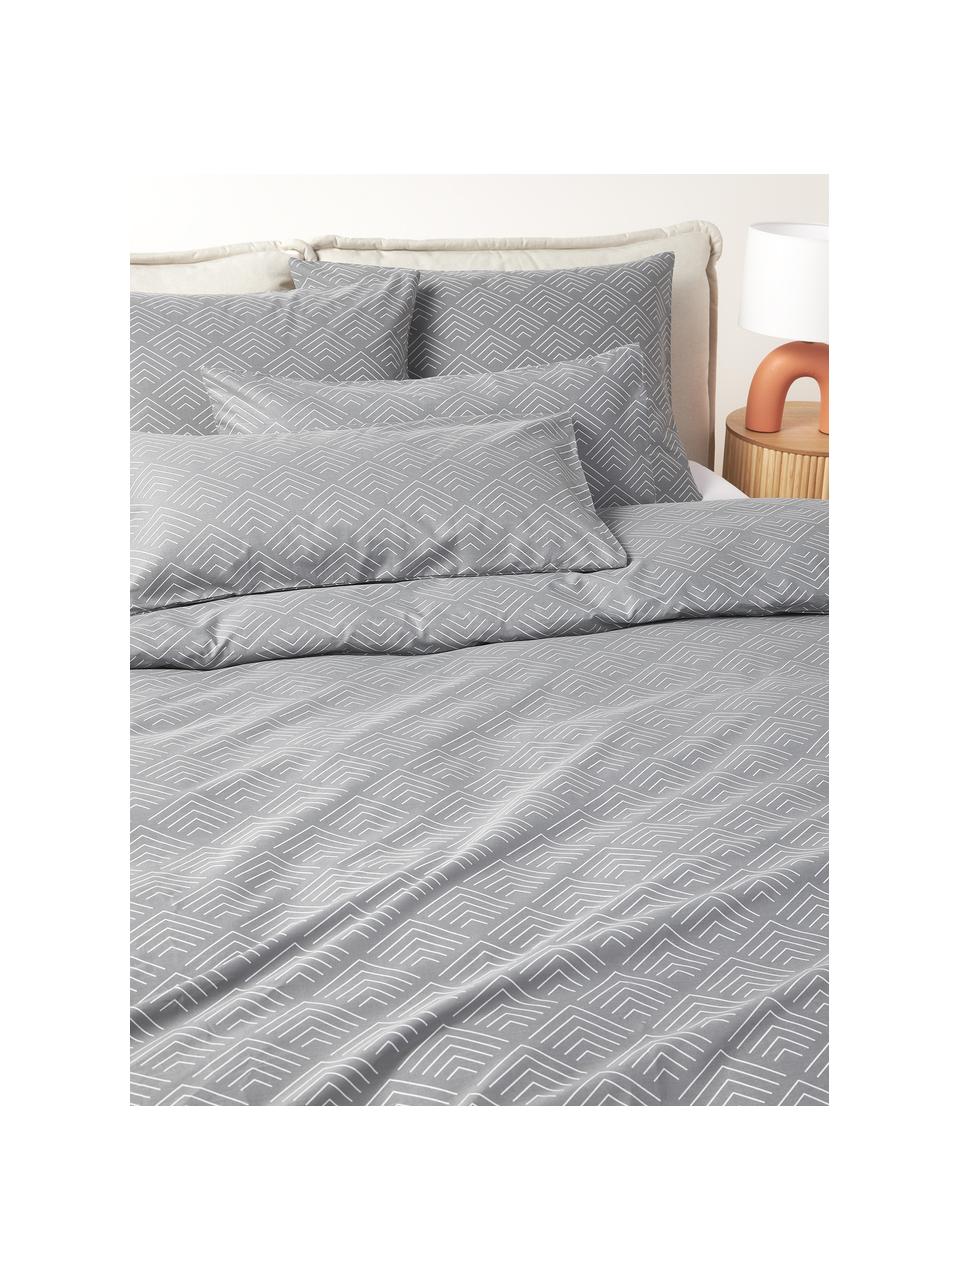 Funda de almohada estampada de algodón Milano, Gris, An 45 x L 110 cm